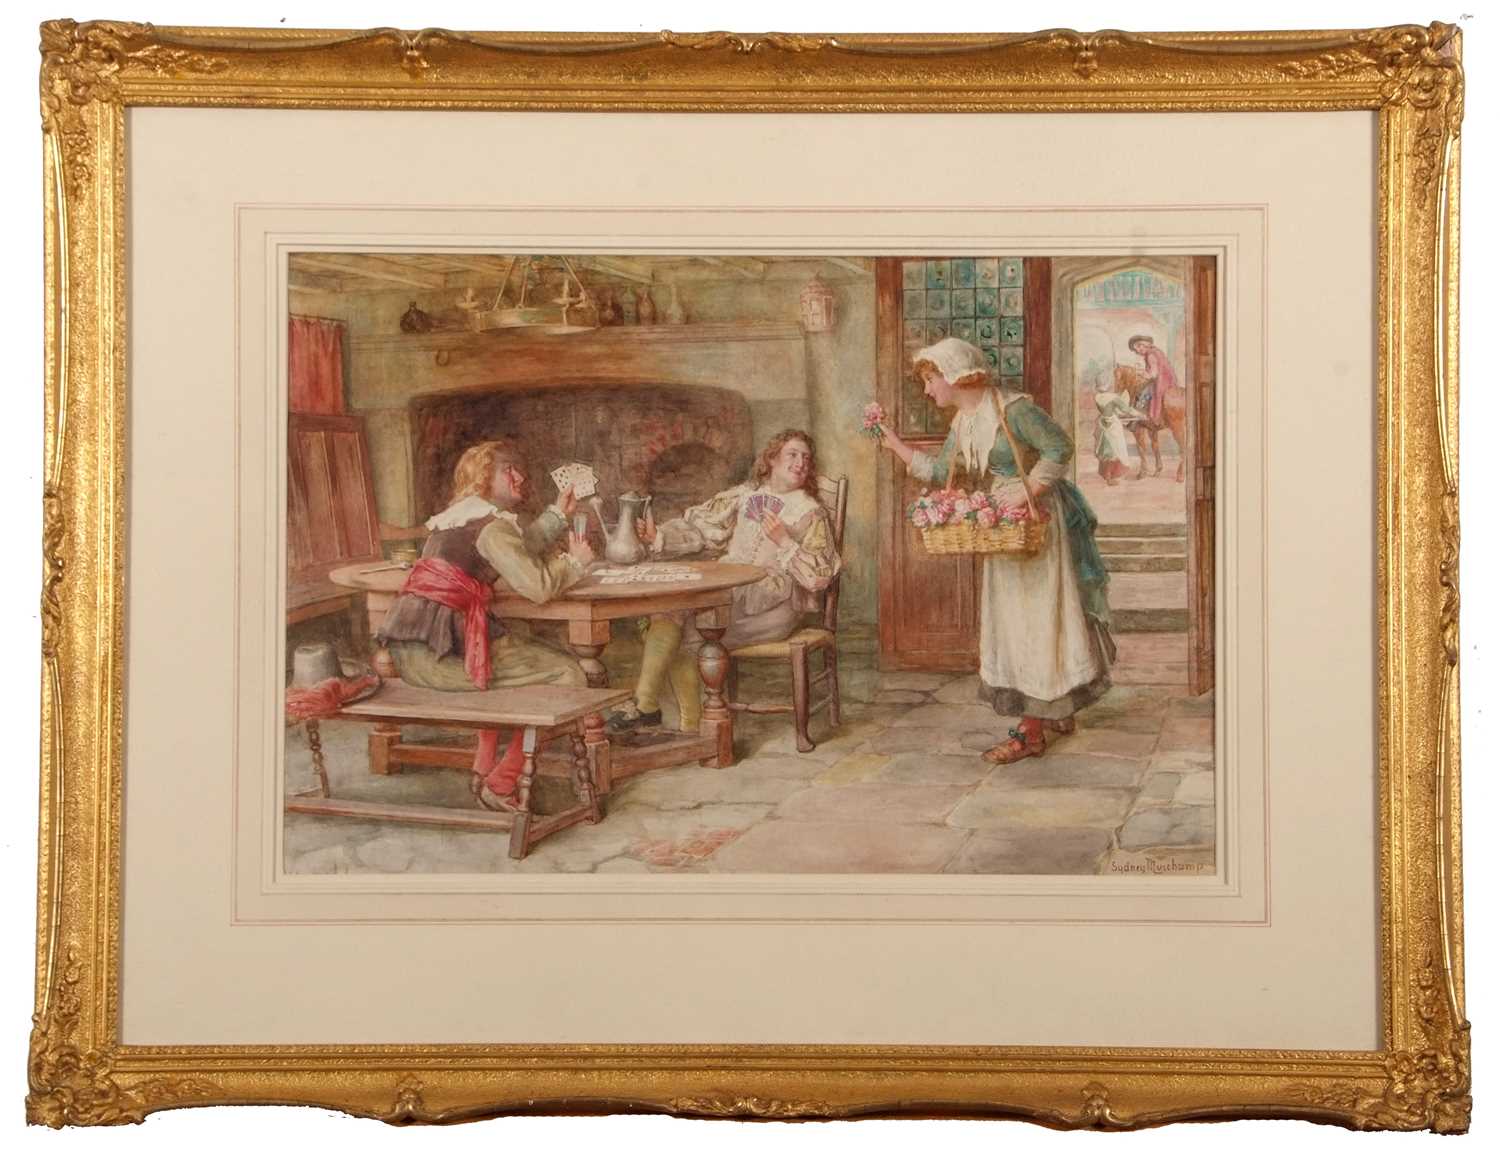 Francis Sydney Muschamp RBA (1851-1929), The Flower Seller, watercolour, signed, gilt framed, - Image 2 of 8